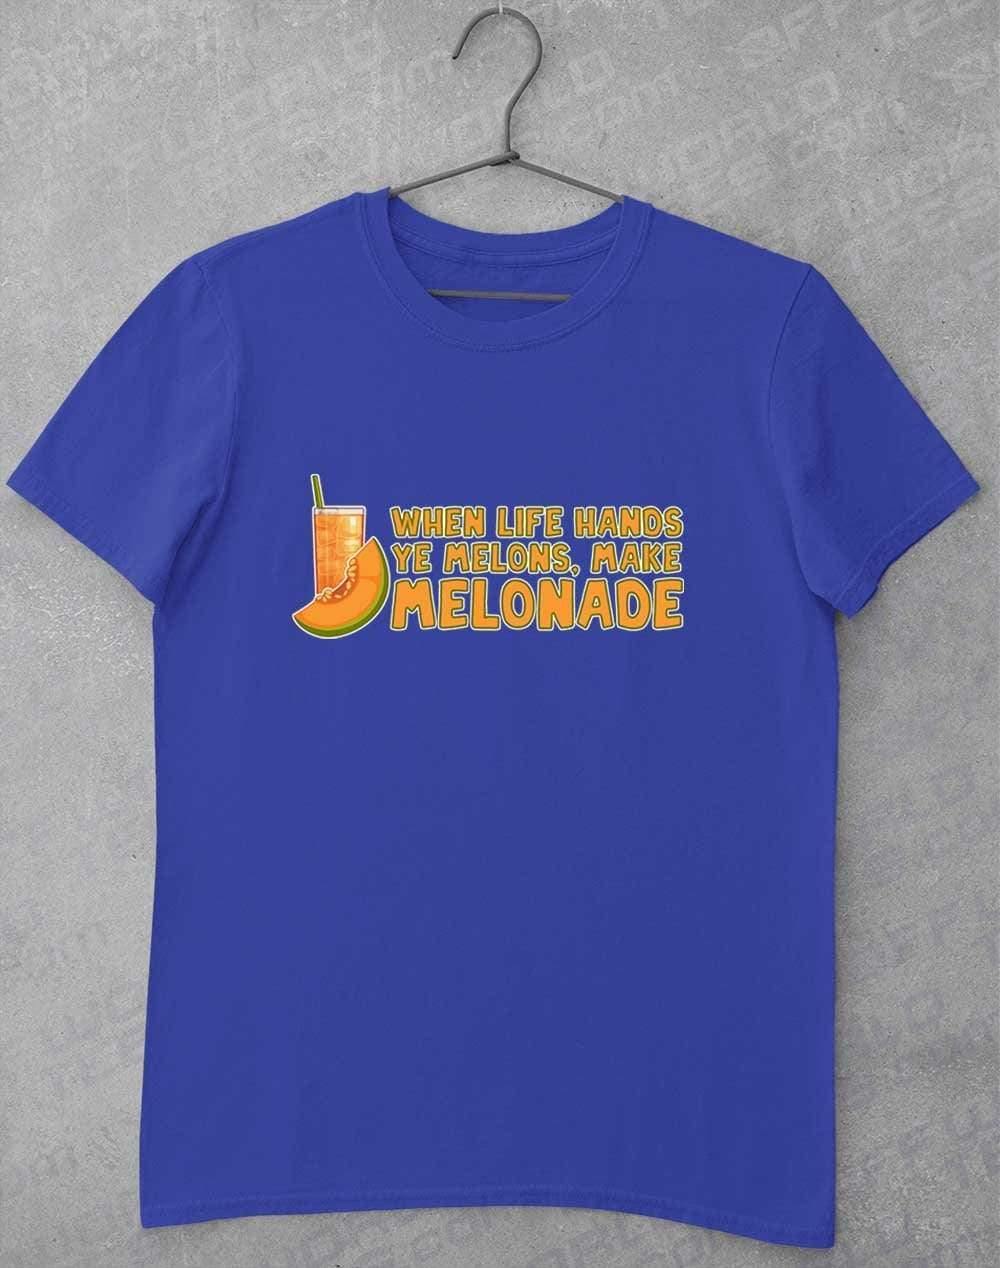 Make Melonade T-Shirt S / Royal  - Off World Tees